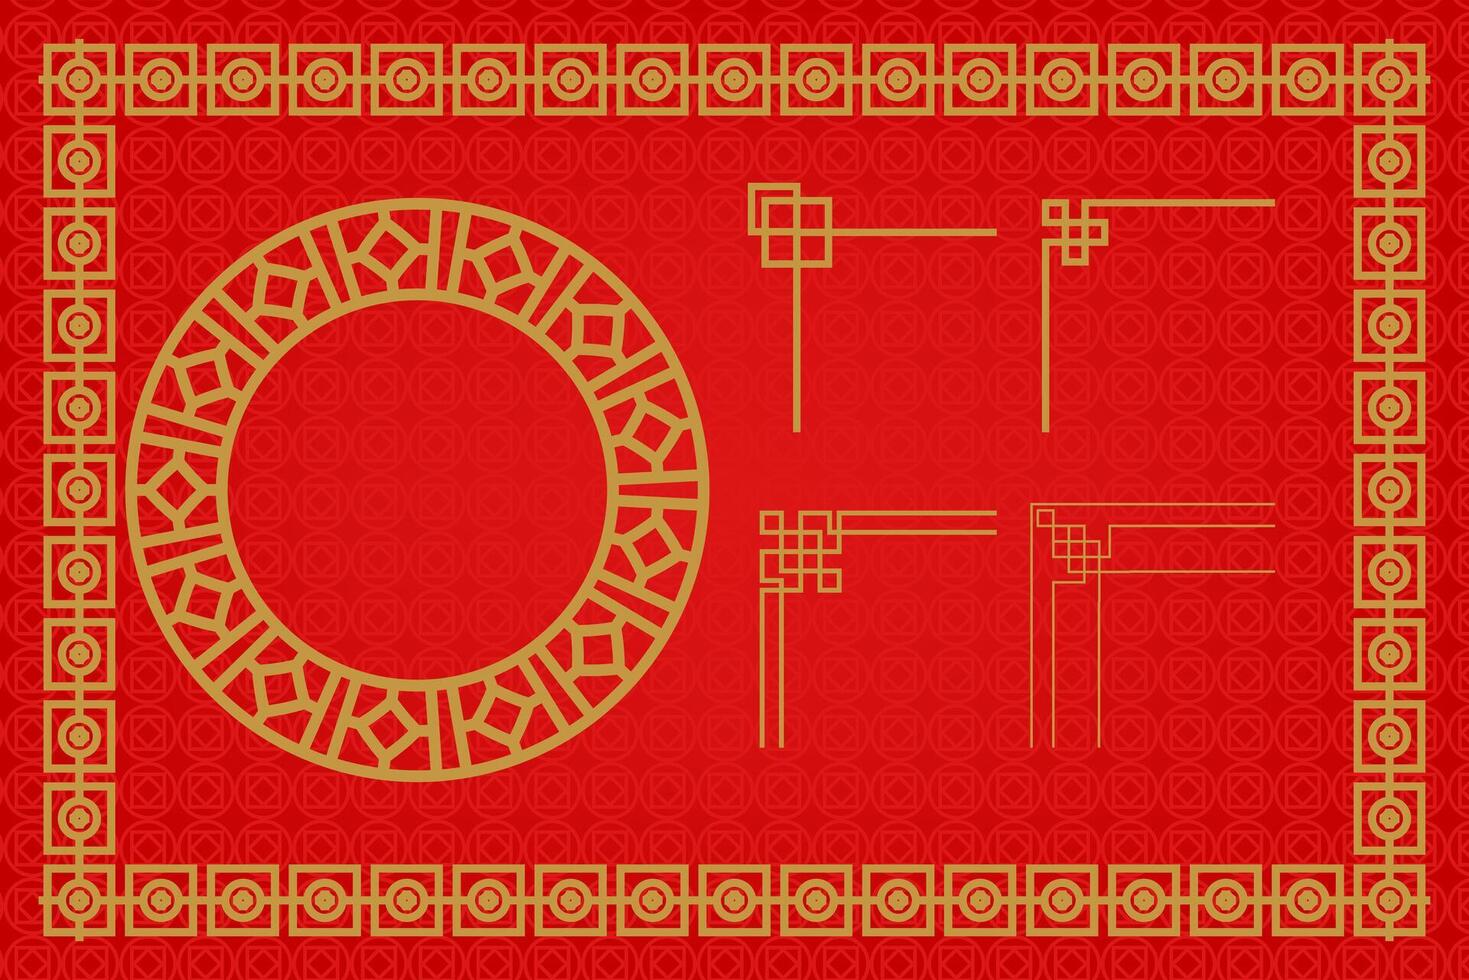 kinesisk orientalisk gräns prydnad öst asiatisk dekorativ konst vektor